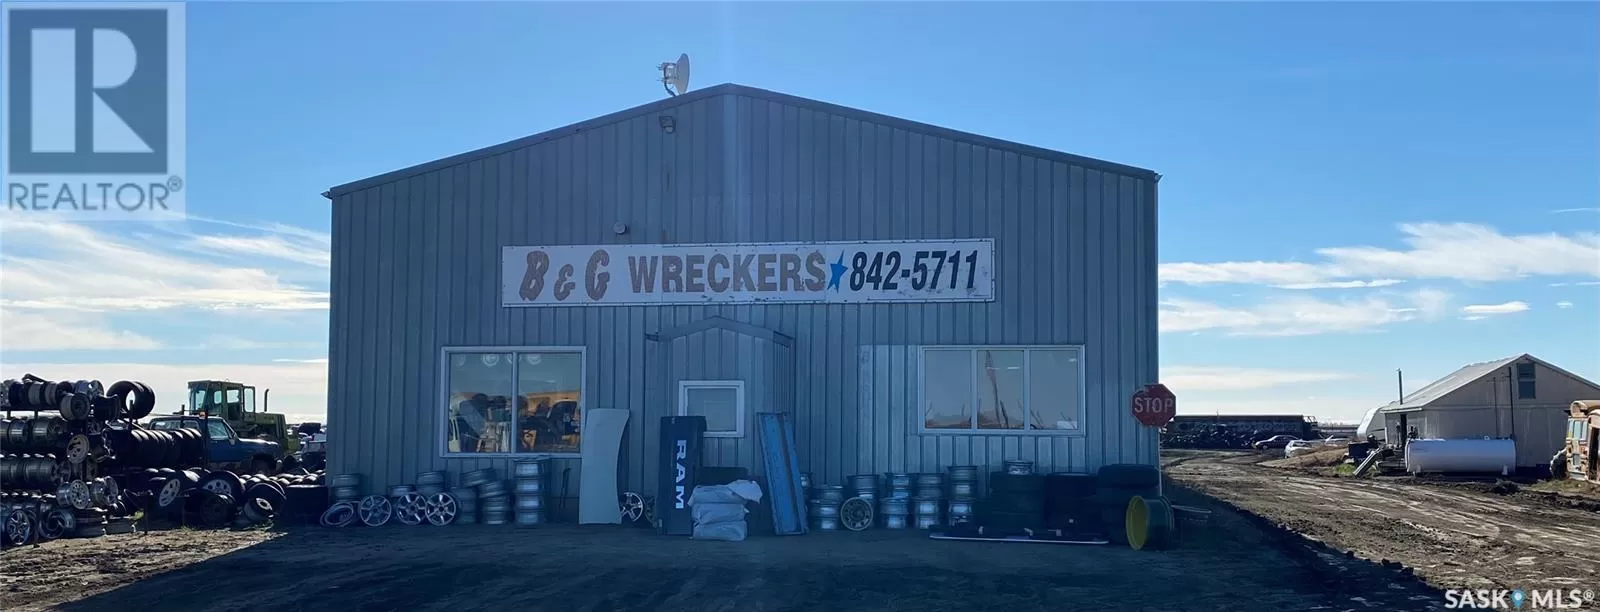 B & G Wreckers, Brokenshell Rm No. 68, Saskatchewan S4H 2J9